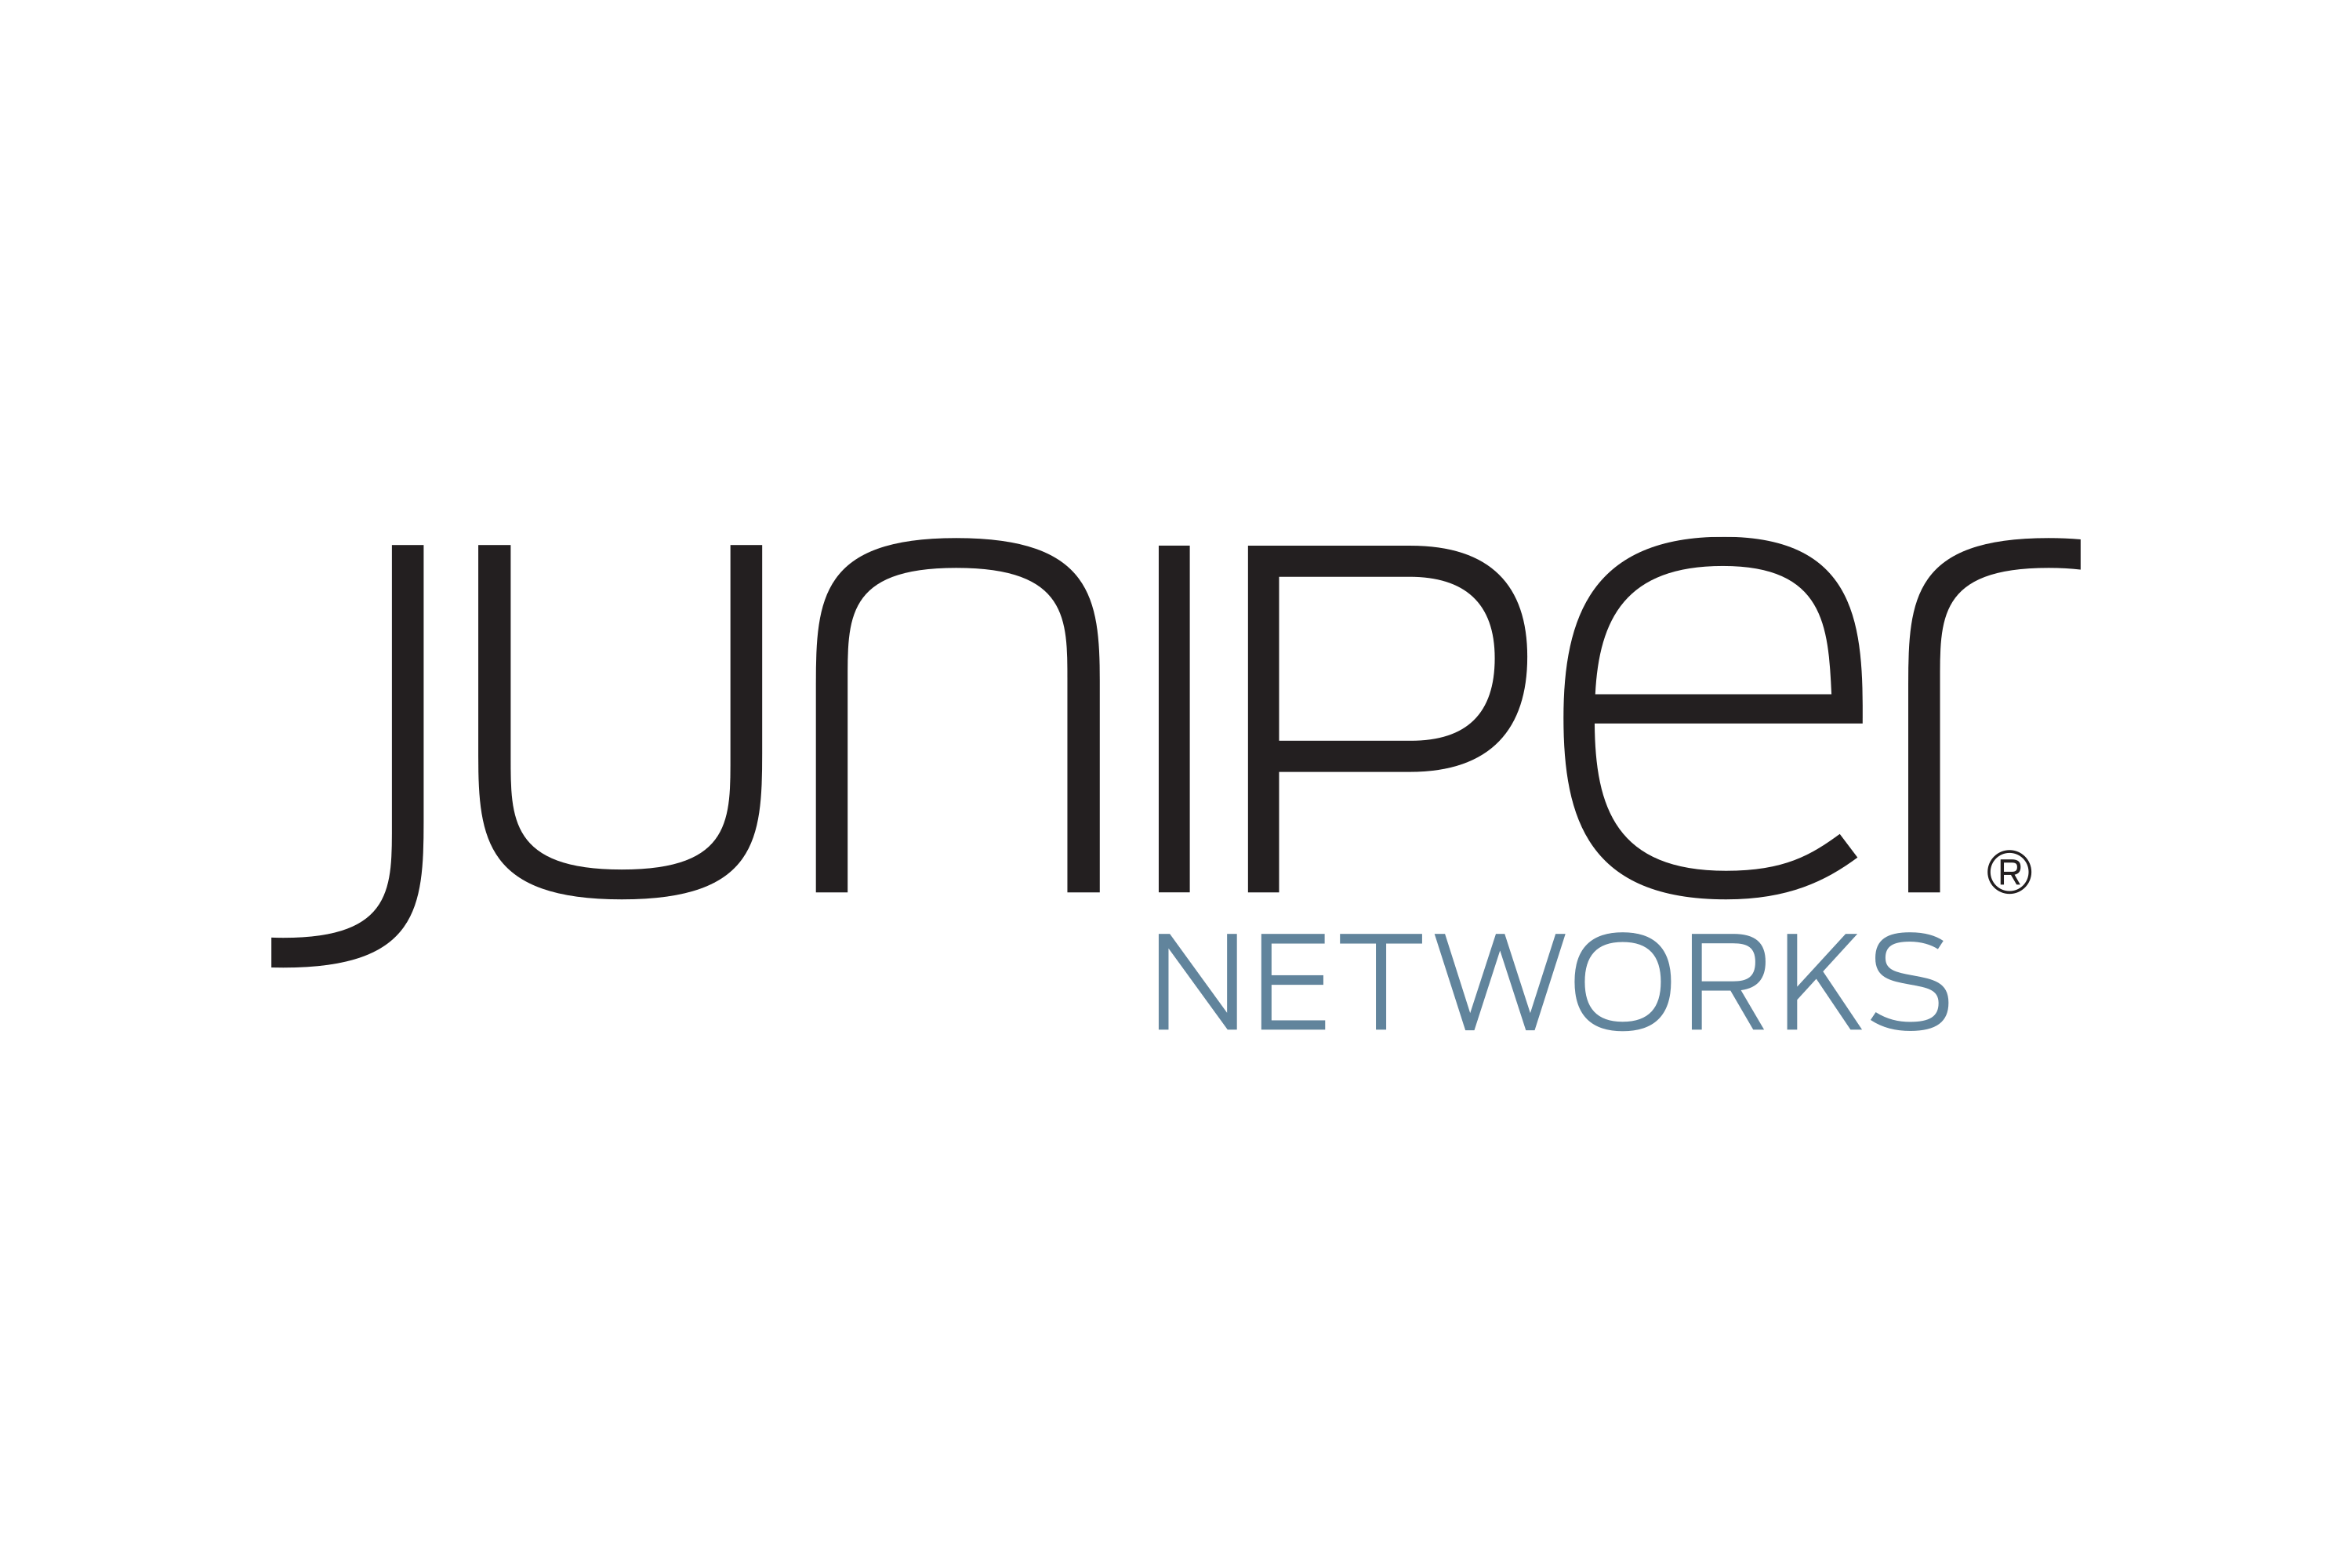 New juniper networks logo highmark davis visions plan